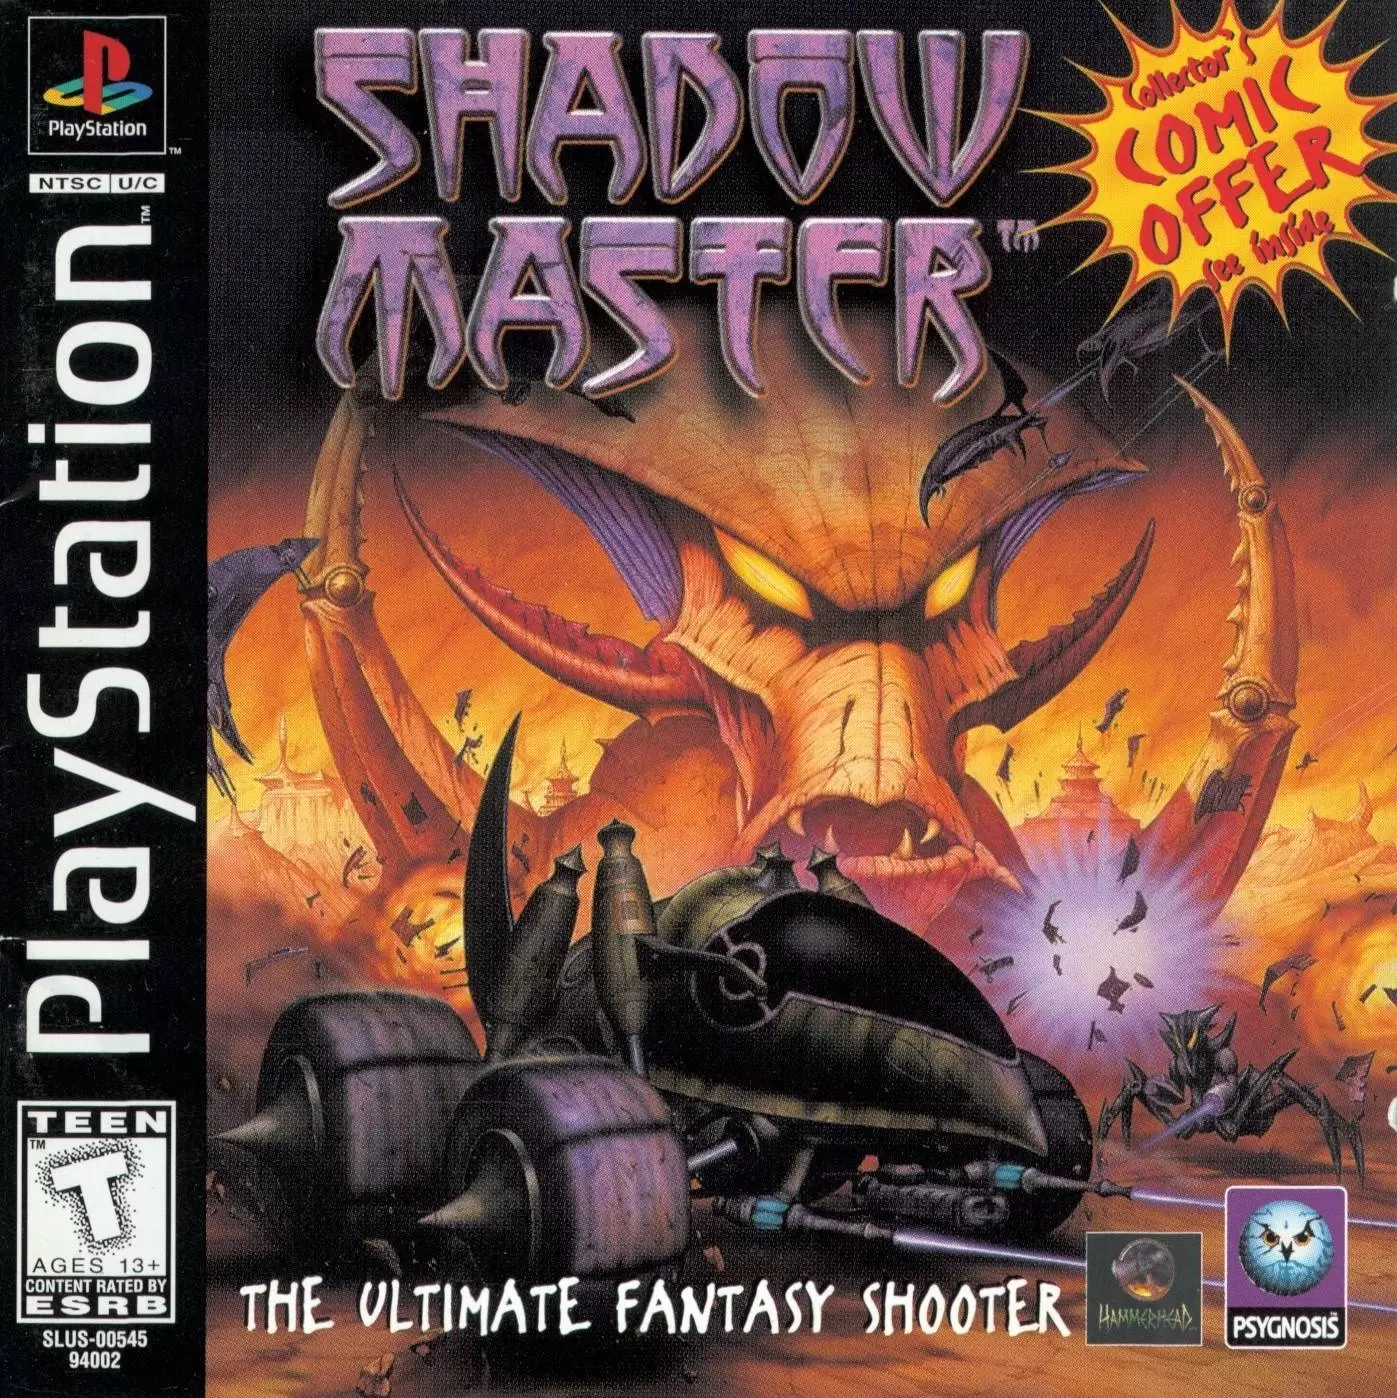 Playstation games - Shadow Master